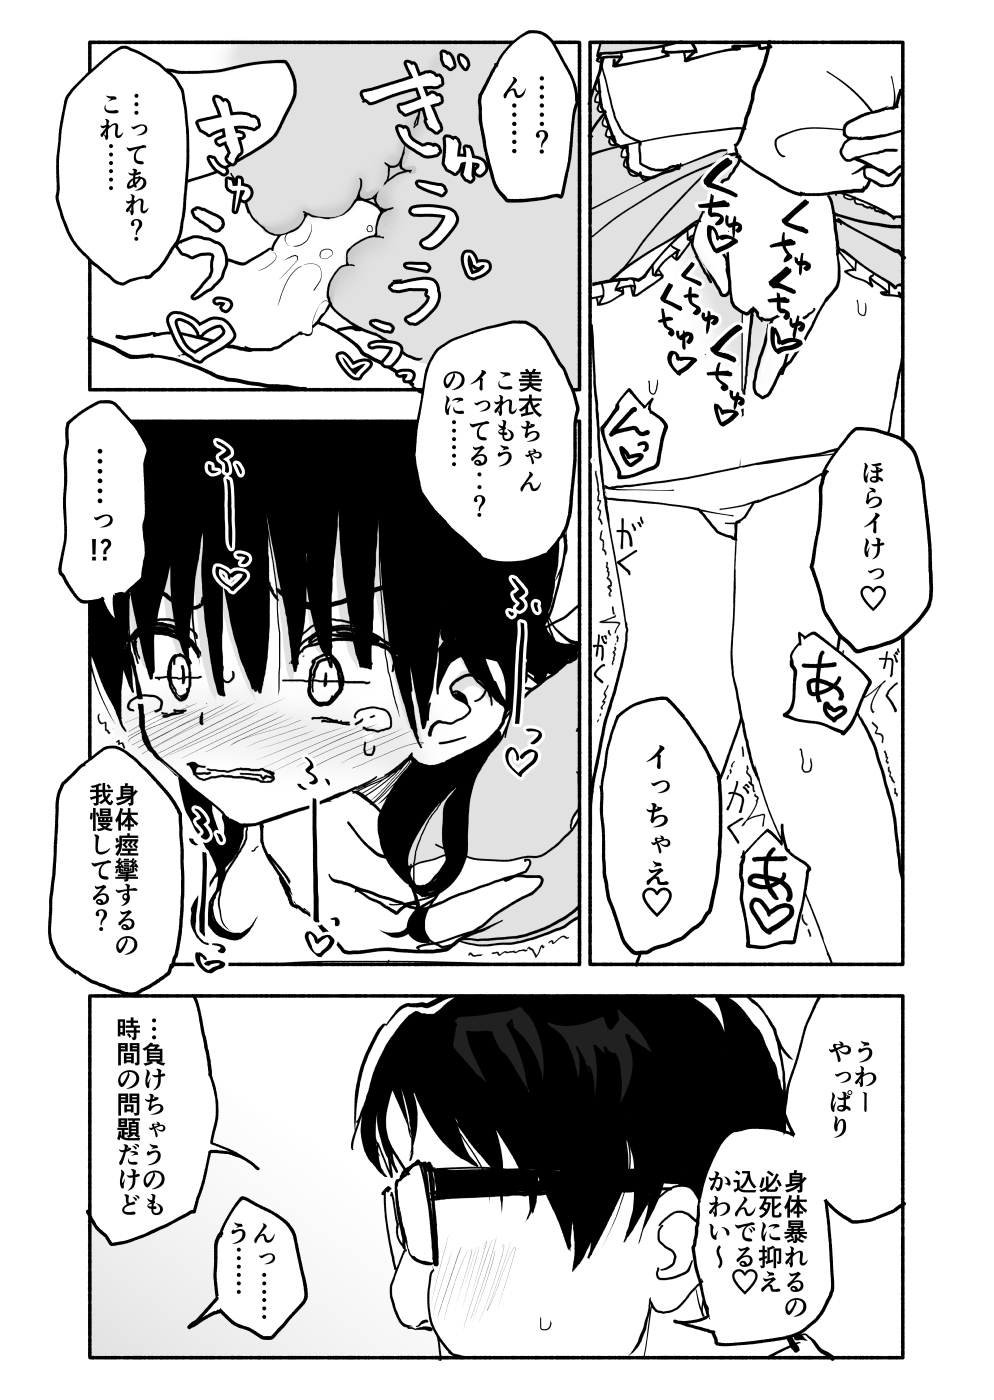 [Futotta Obasan] Okashi Tsukuri Idol ☆ Gimi ! Ecchi na Himitsu no Tokkun manga page 31 full